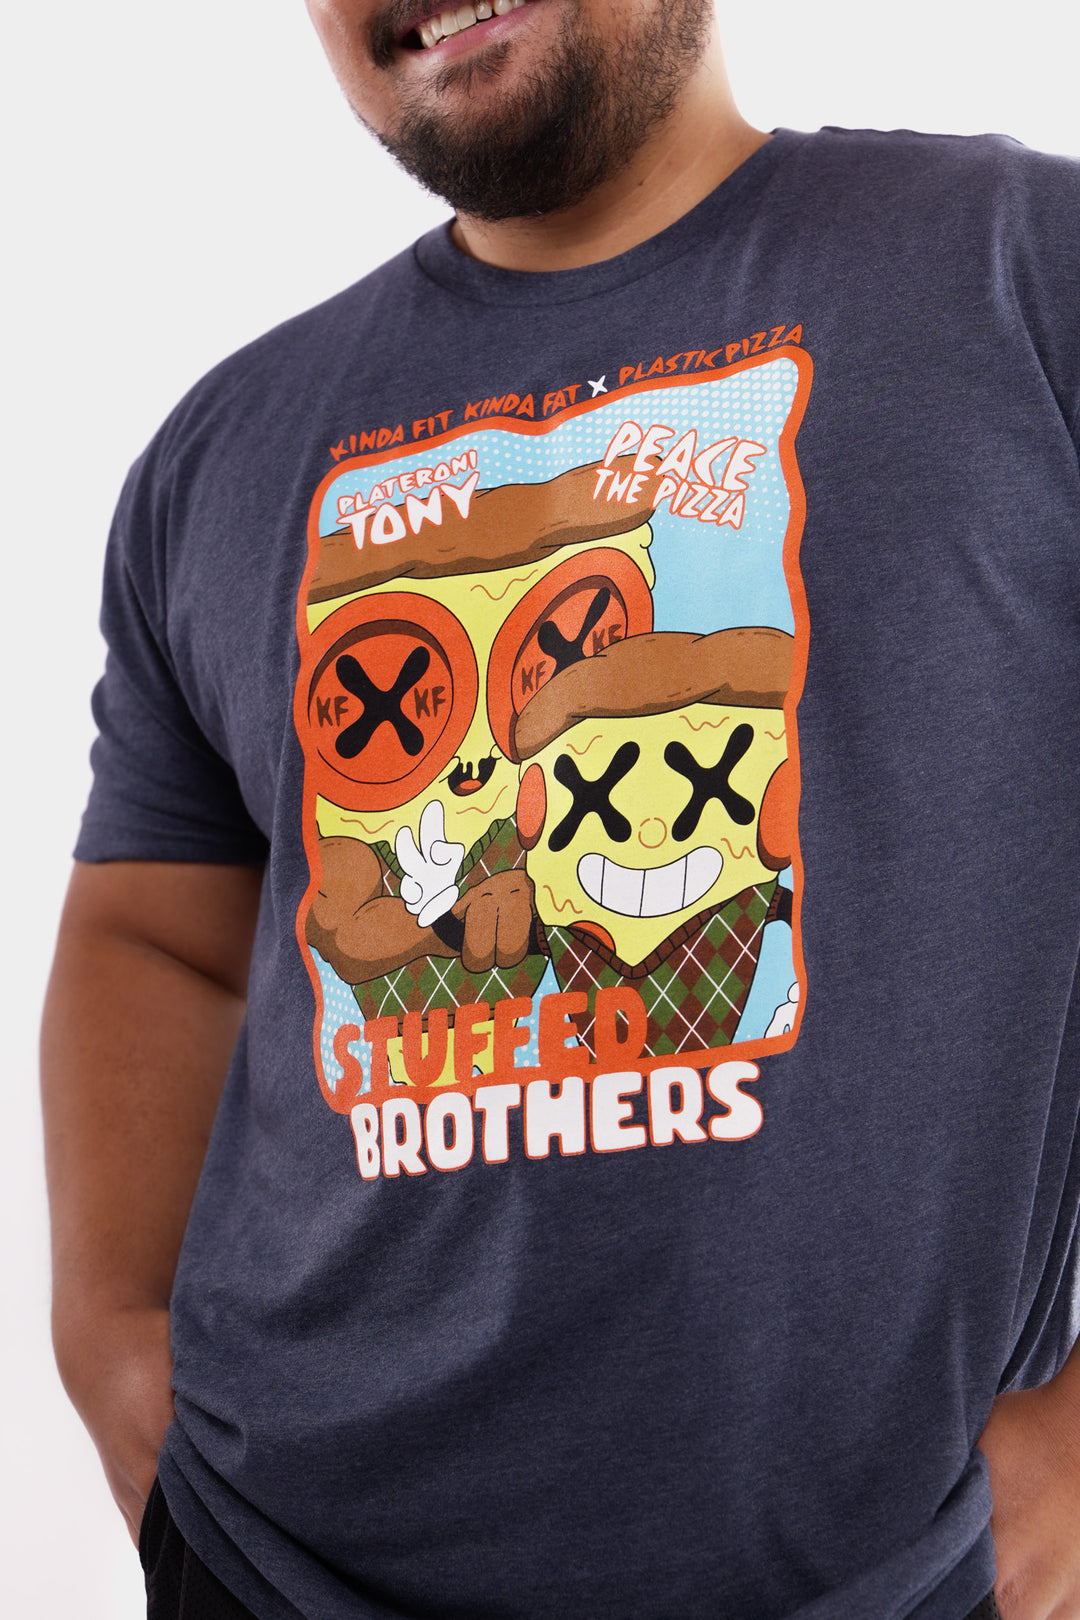 KFKF x Plastic Pizza Stuffed Brothers Signature Blend T-Shirt